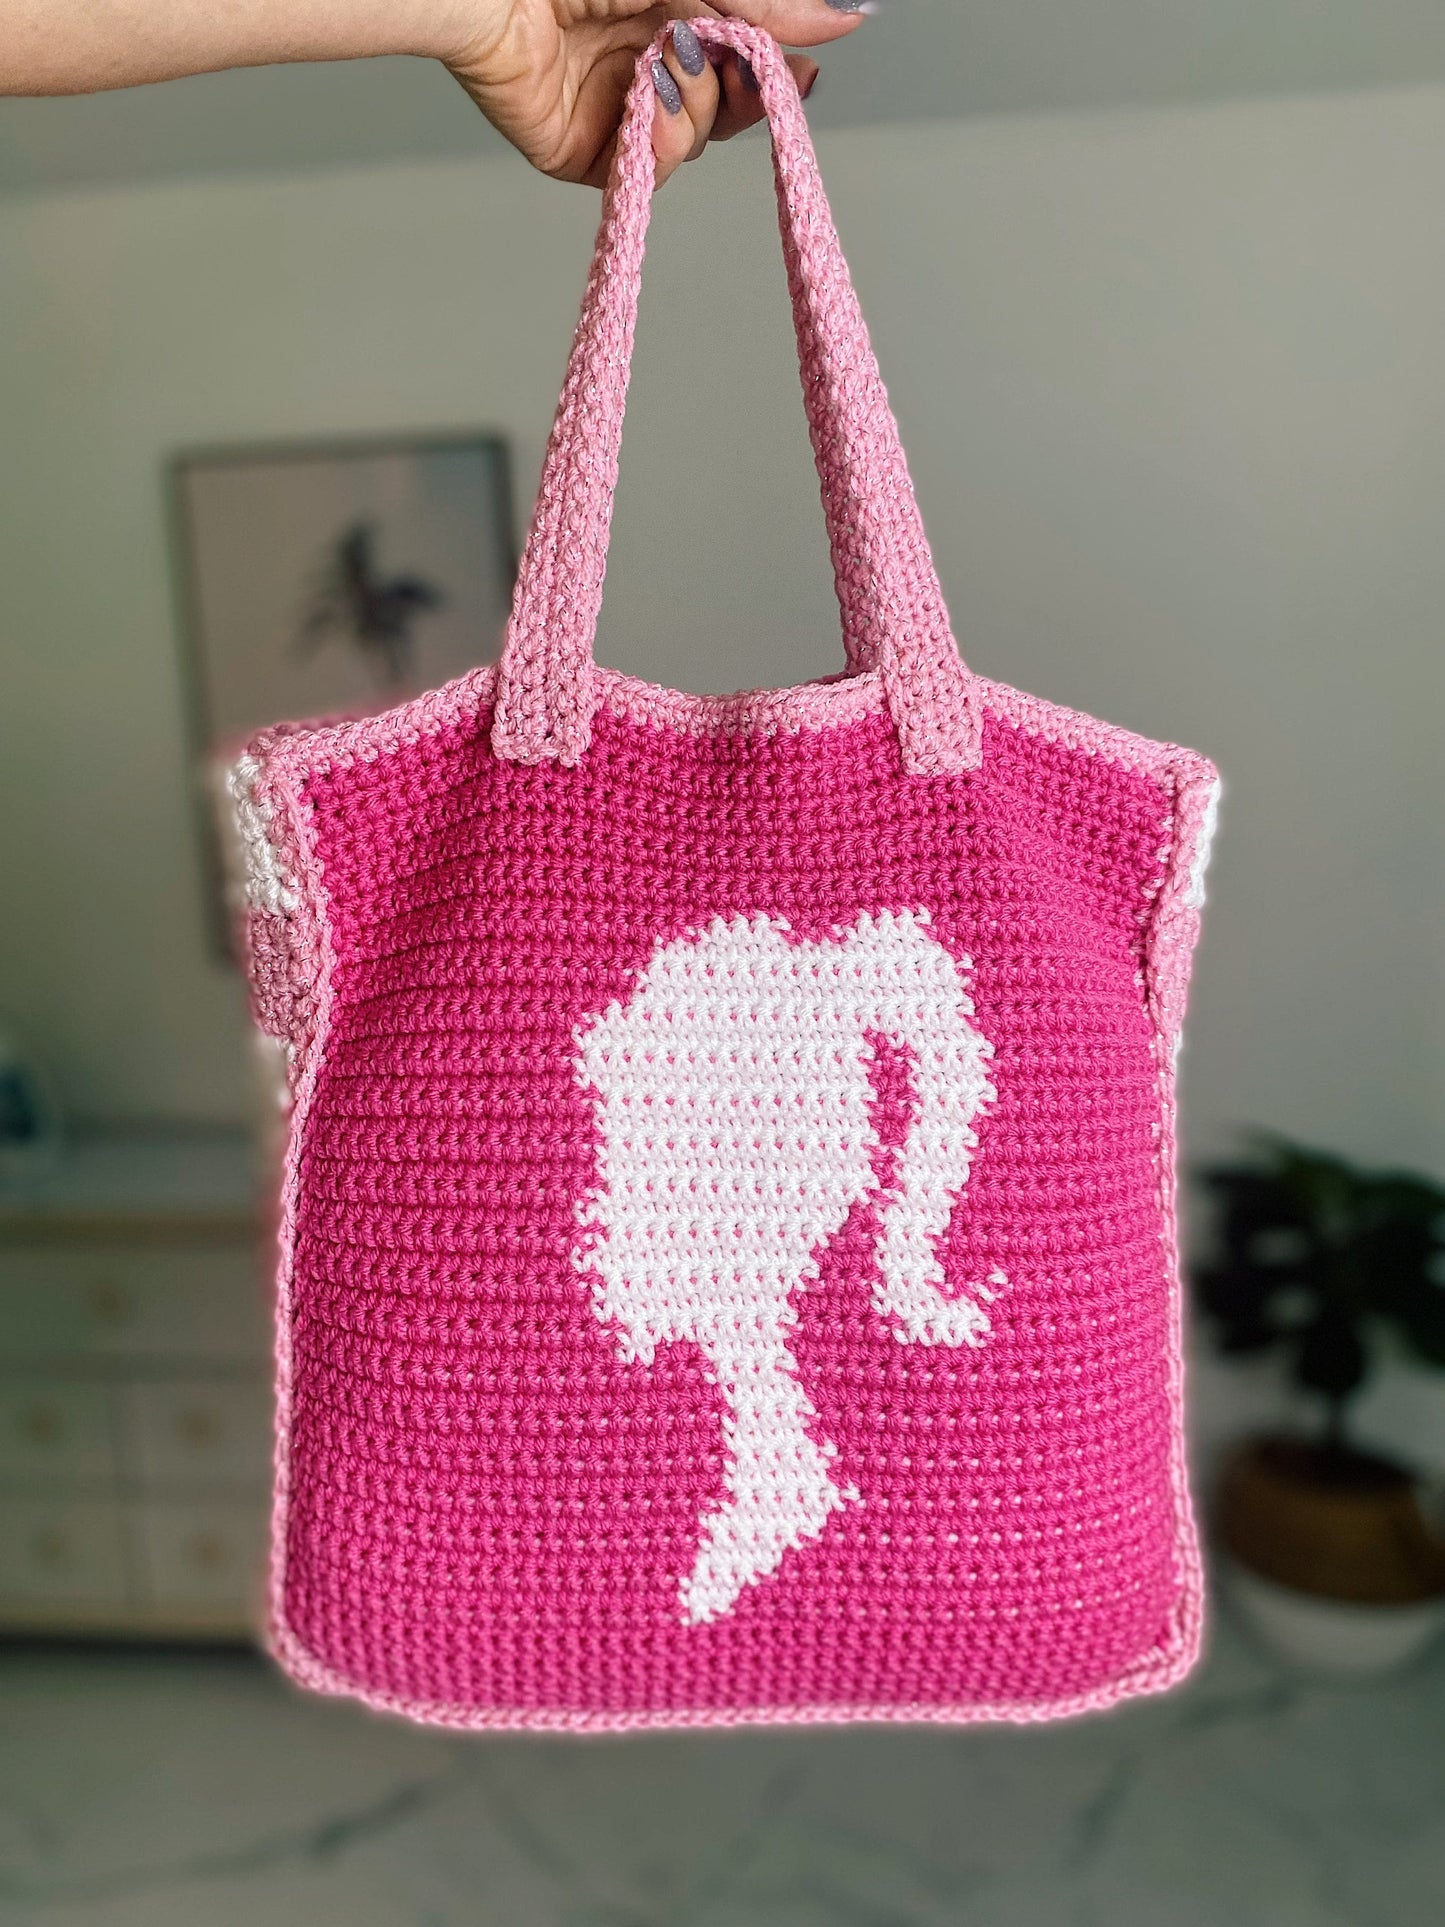 CROCHET PATTERN - Baddie Barbie Bag Crochet Pattern